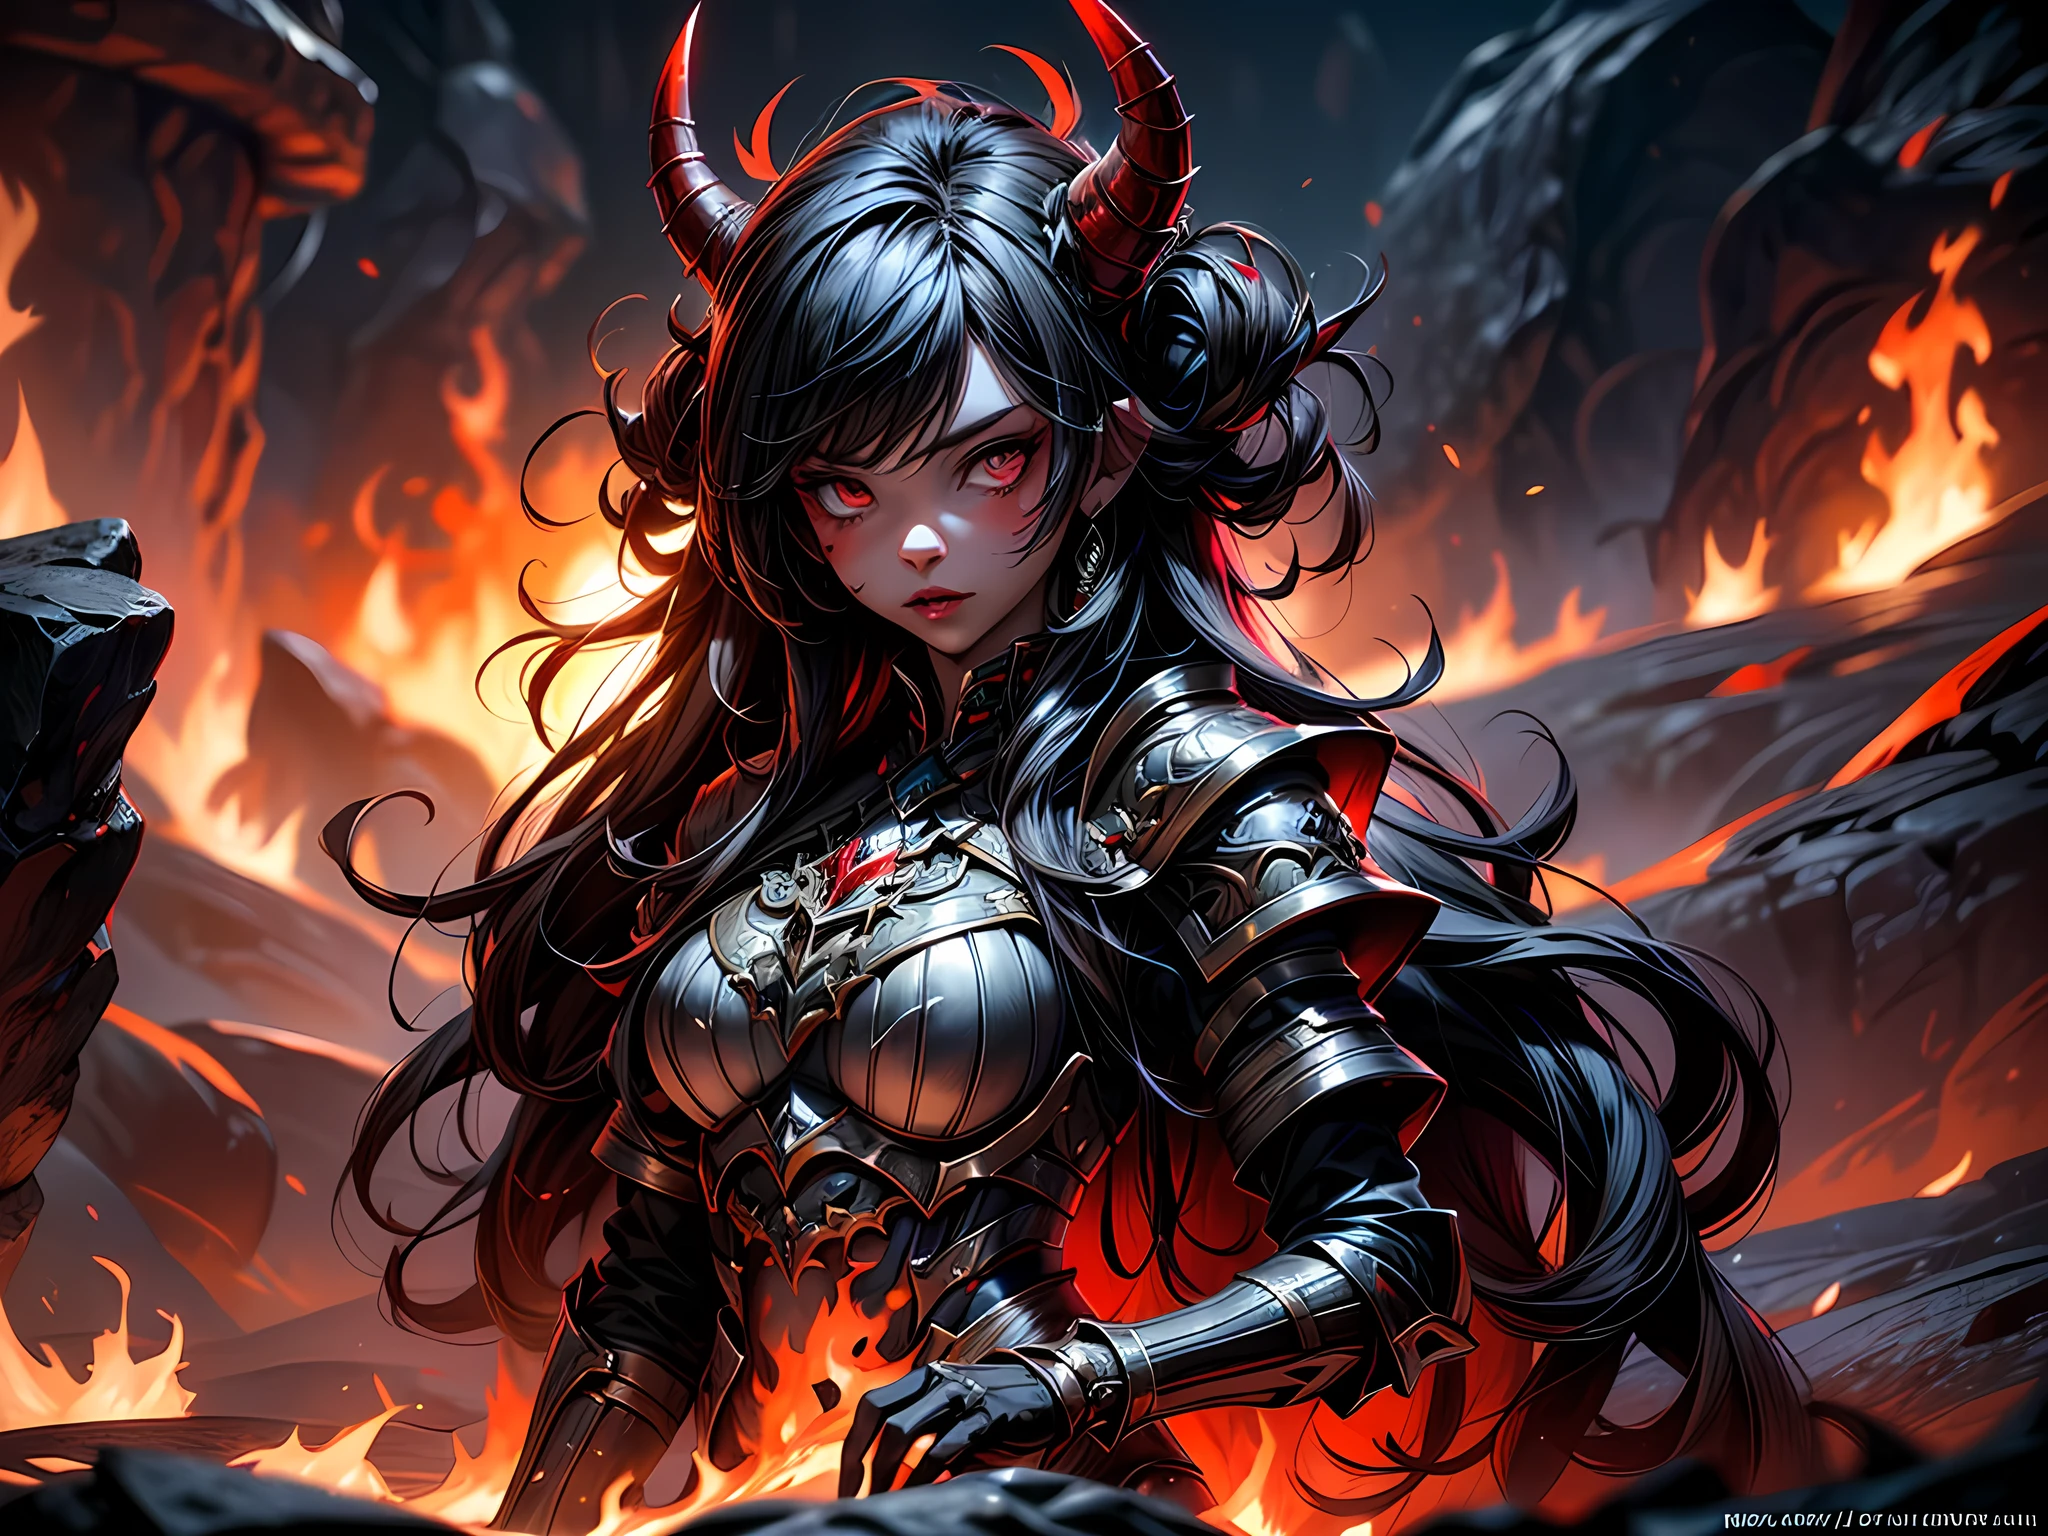 판타지 아트, RPG 아트, 걸작, 지옥에서 온 지옥 같은 여자 악마의 초상화 사진, 그녀는 가지고 있다 (검은색 horns: 1.2), (검은색: 1.2) 악마 날개, (빨간색: 1.3) 피부, 빨간색 lava dripping from her, 그녀는 입는다 (하얀색: 1.3) 갑옷, hdsrmr, 굴러가는 용암의 흐름, 지옥의 배경, 3D 렌더링